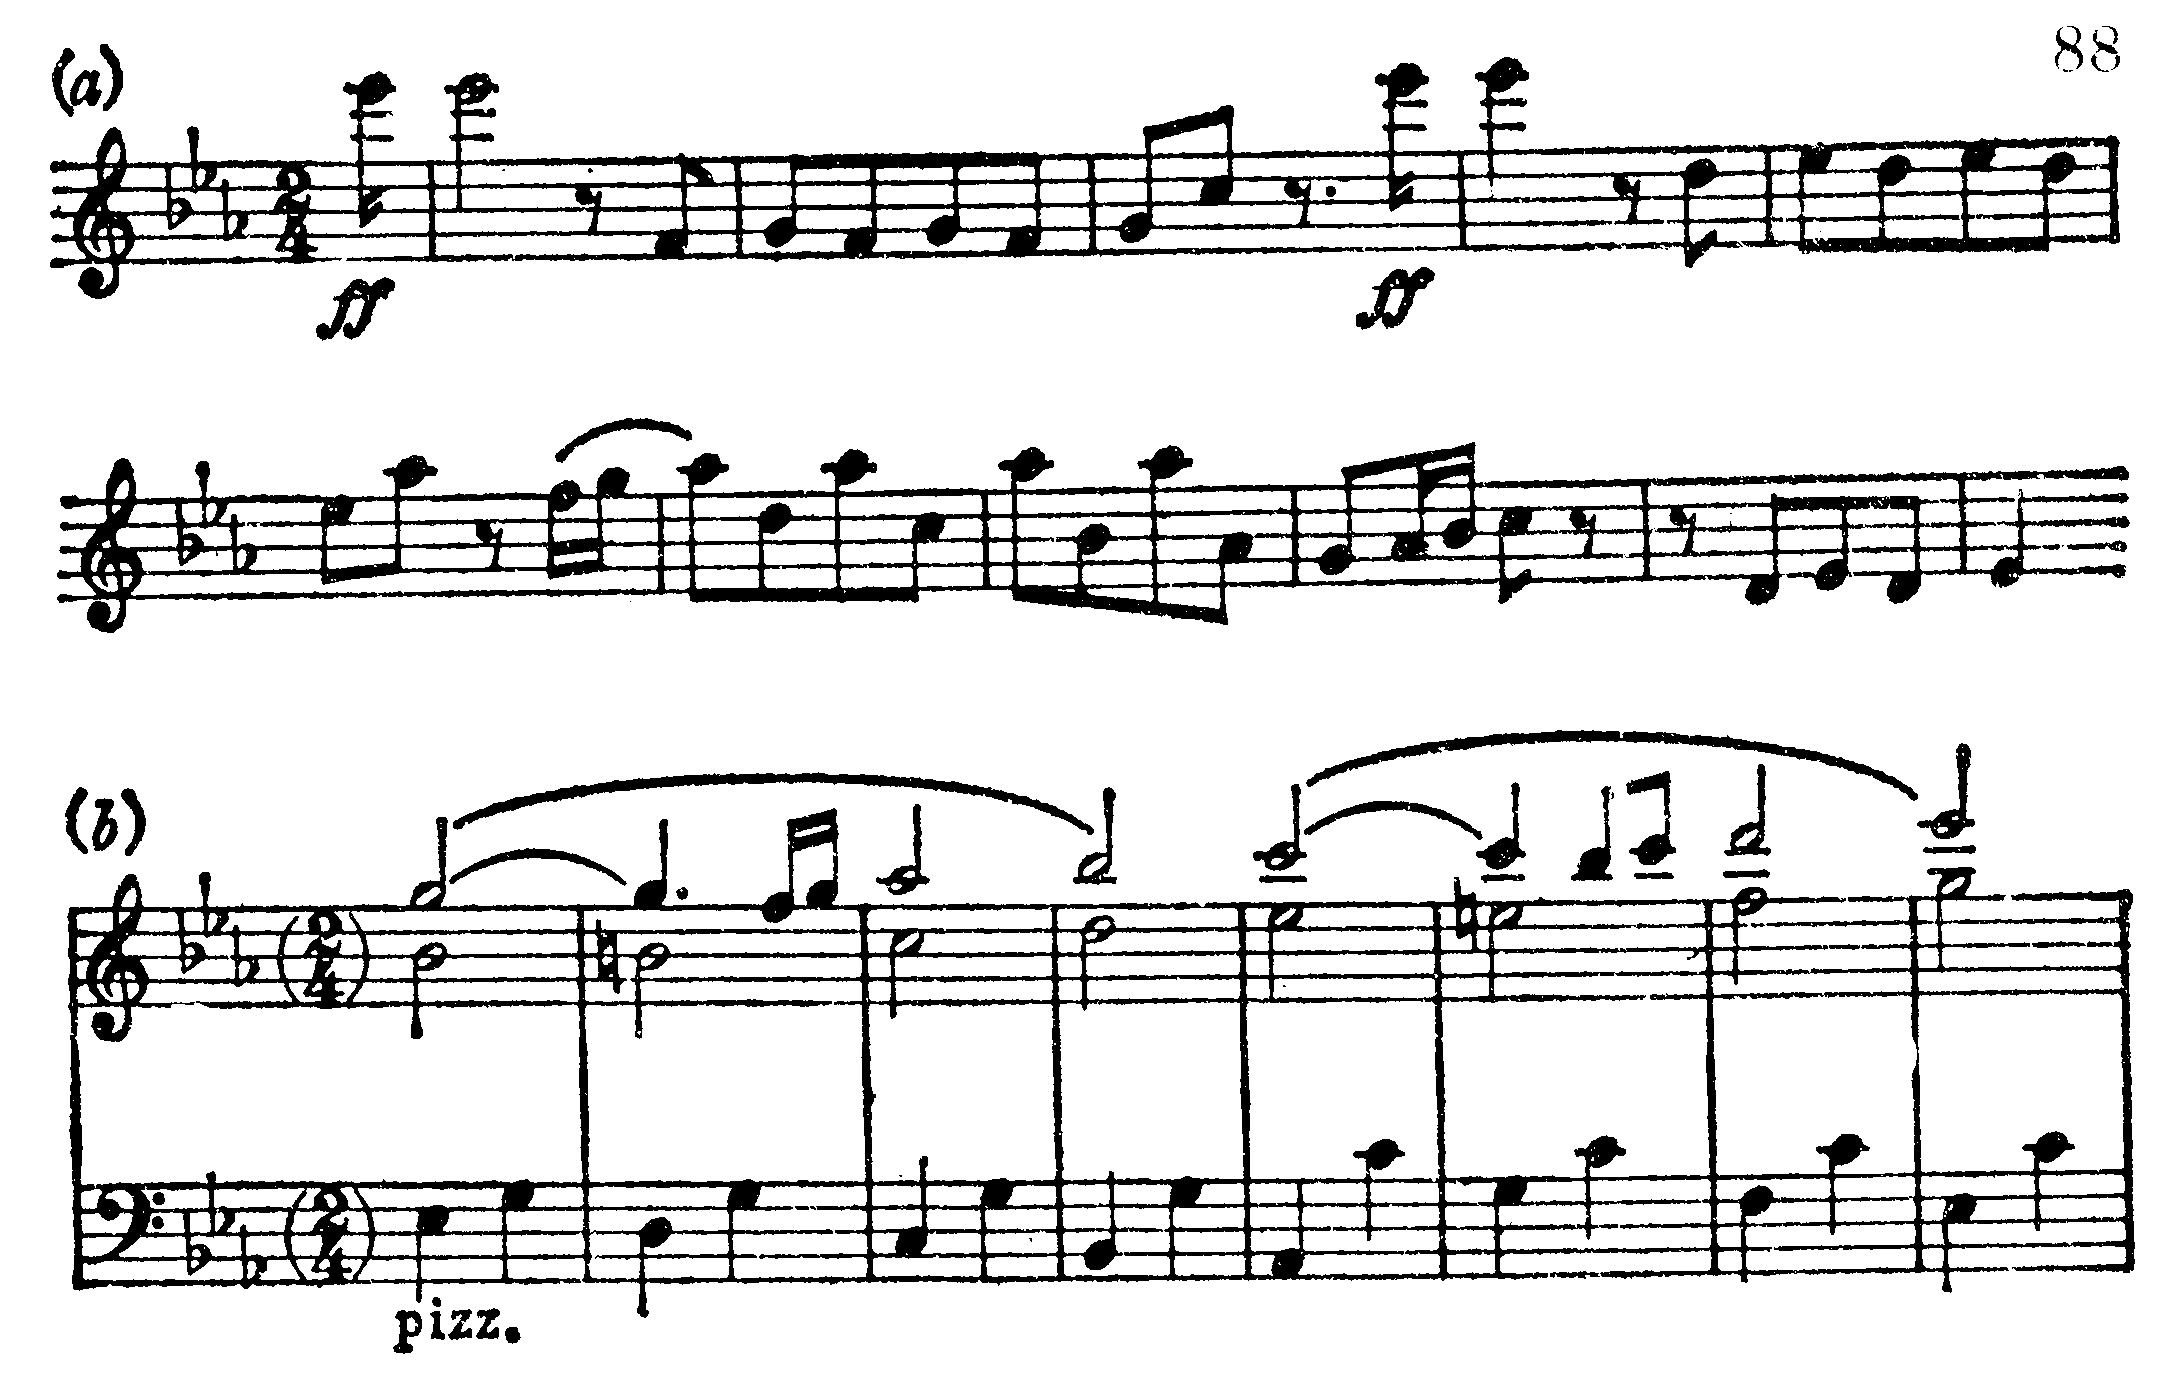 Symfoni, ex 88